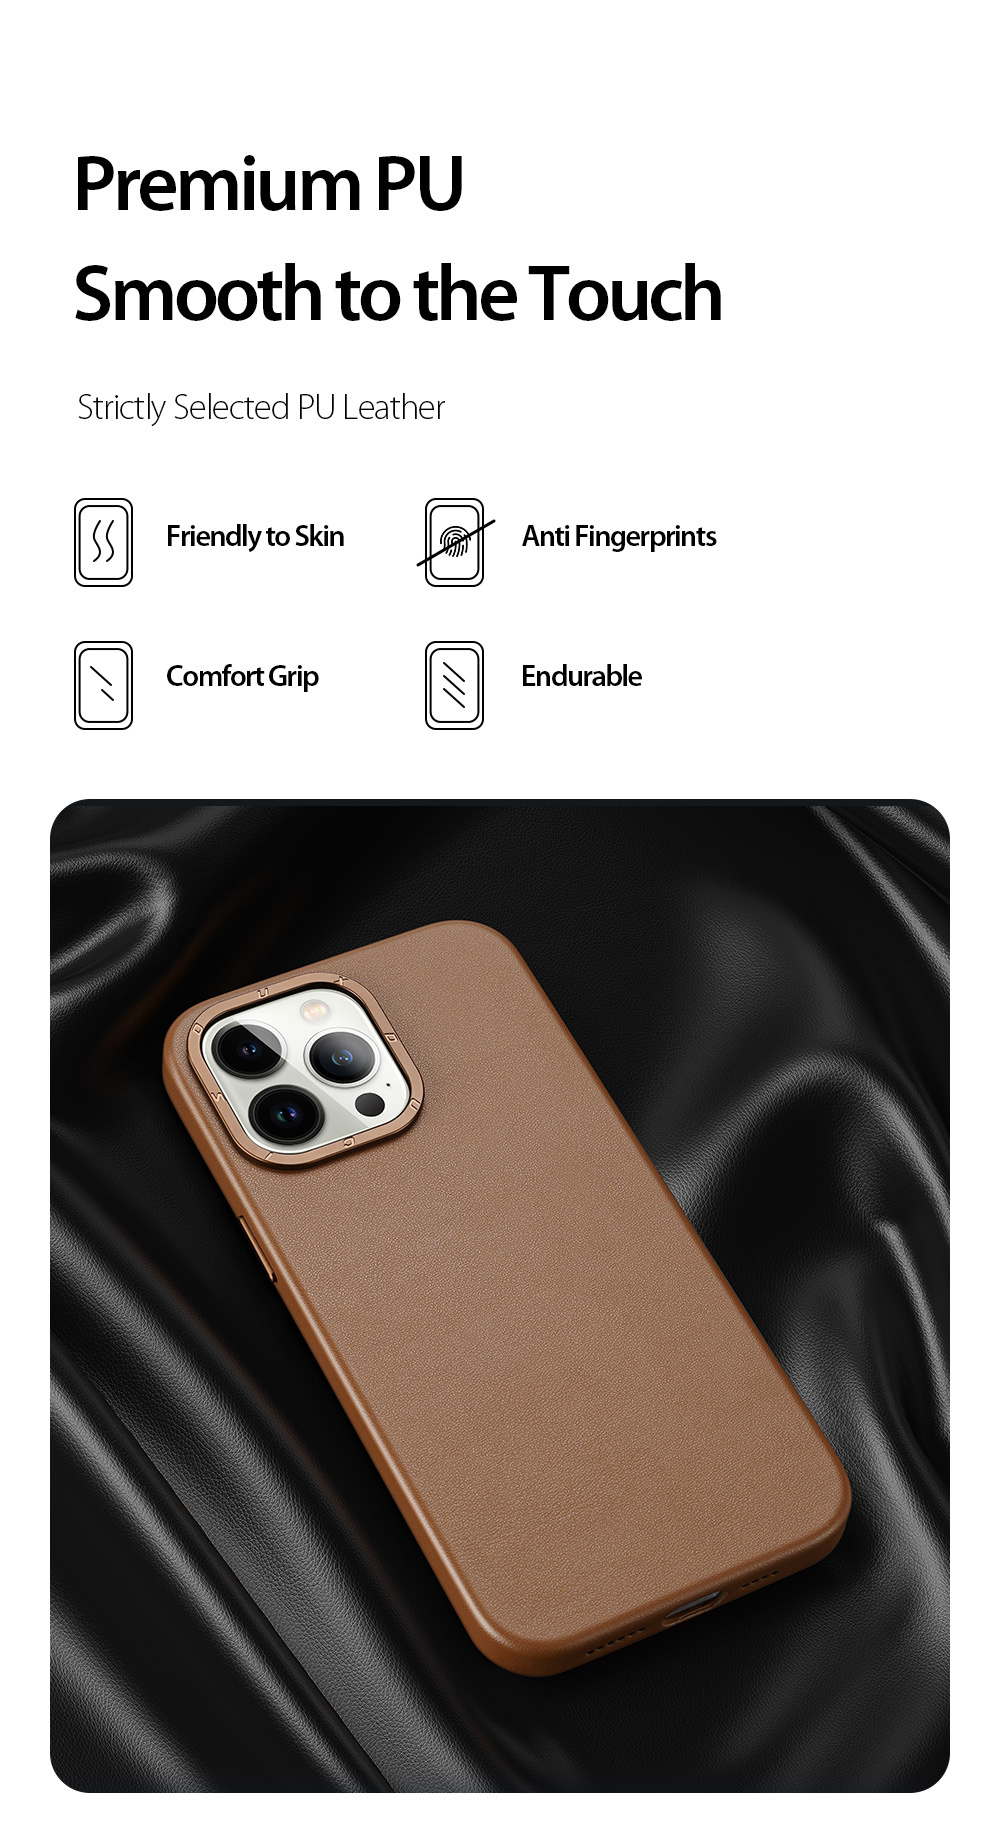 Ốp Lưng Case Bảo Vệ Da Cao Cấp Sạc Từ Tính Dux Ducis Grit Series PU Dành Cho iPhone 14 Pro Max - Hàng Chính Hãng